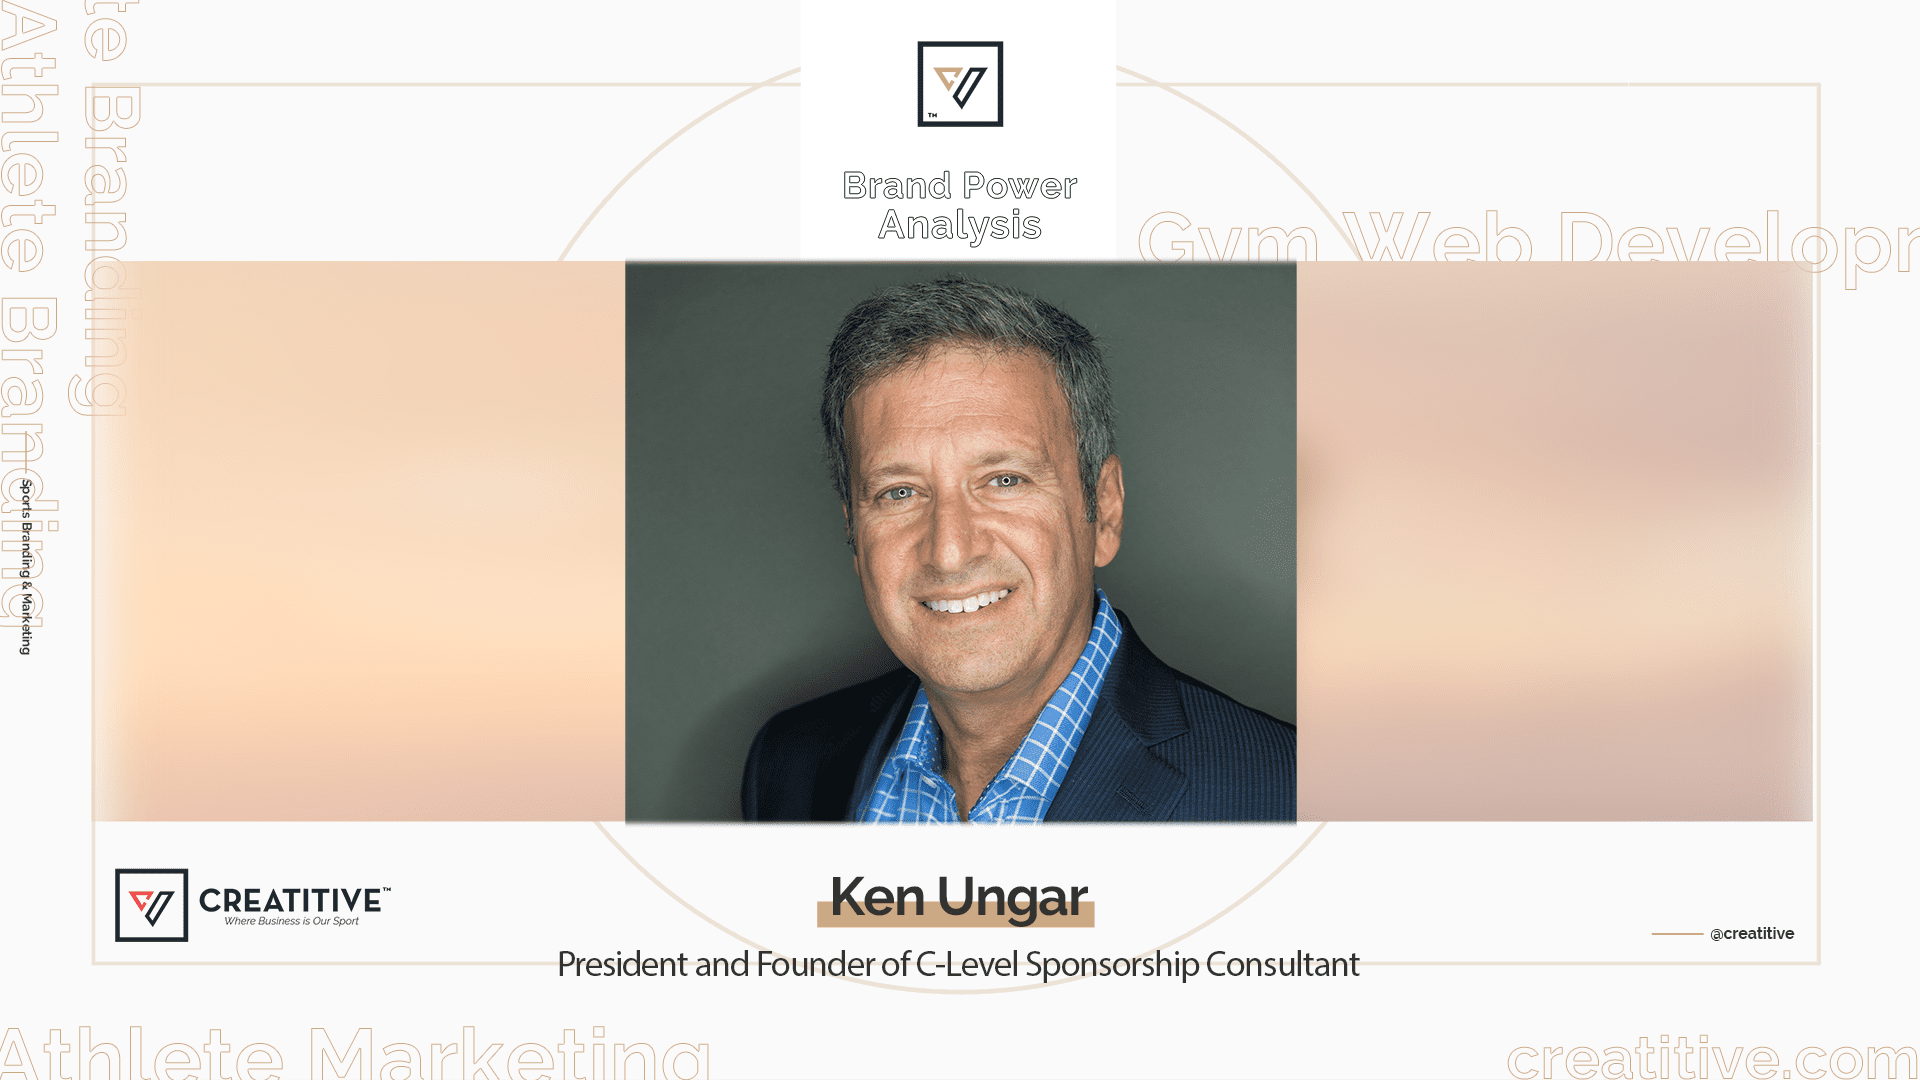 Brand Power Analysis: Ken Ungar of Charge Sponsorships